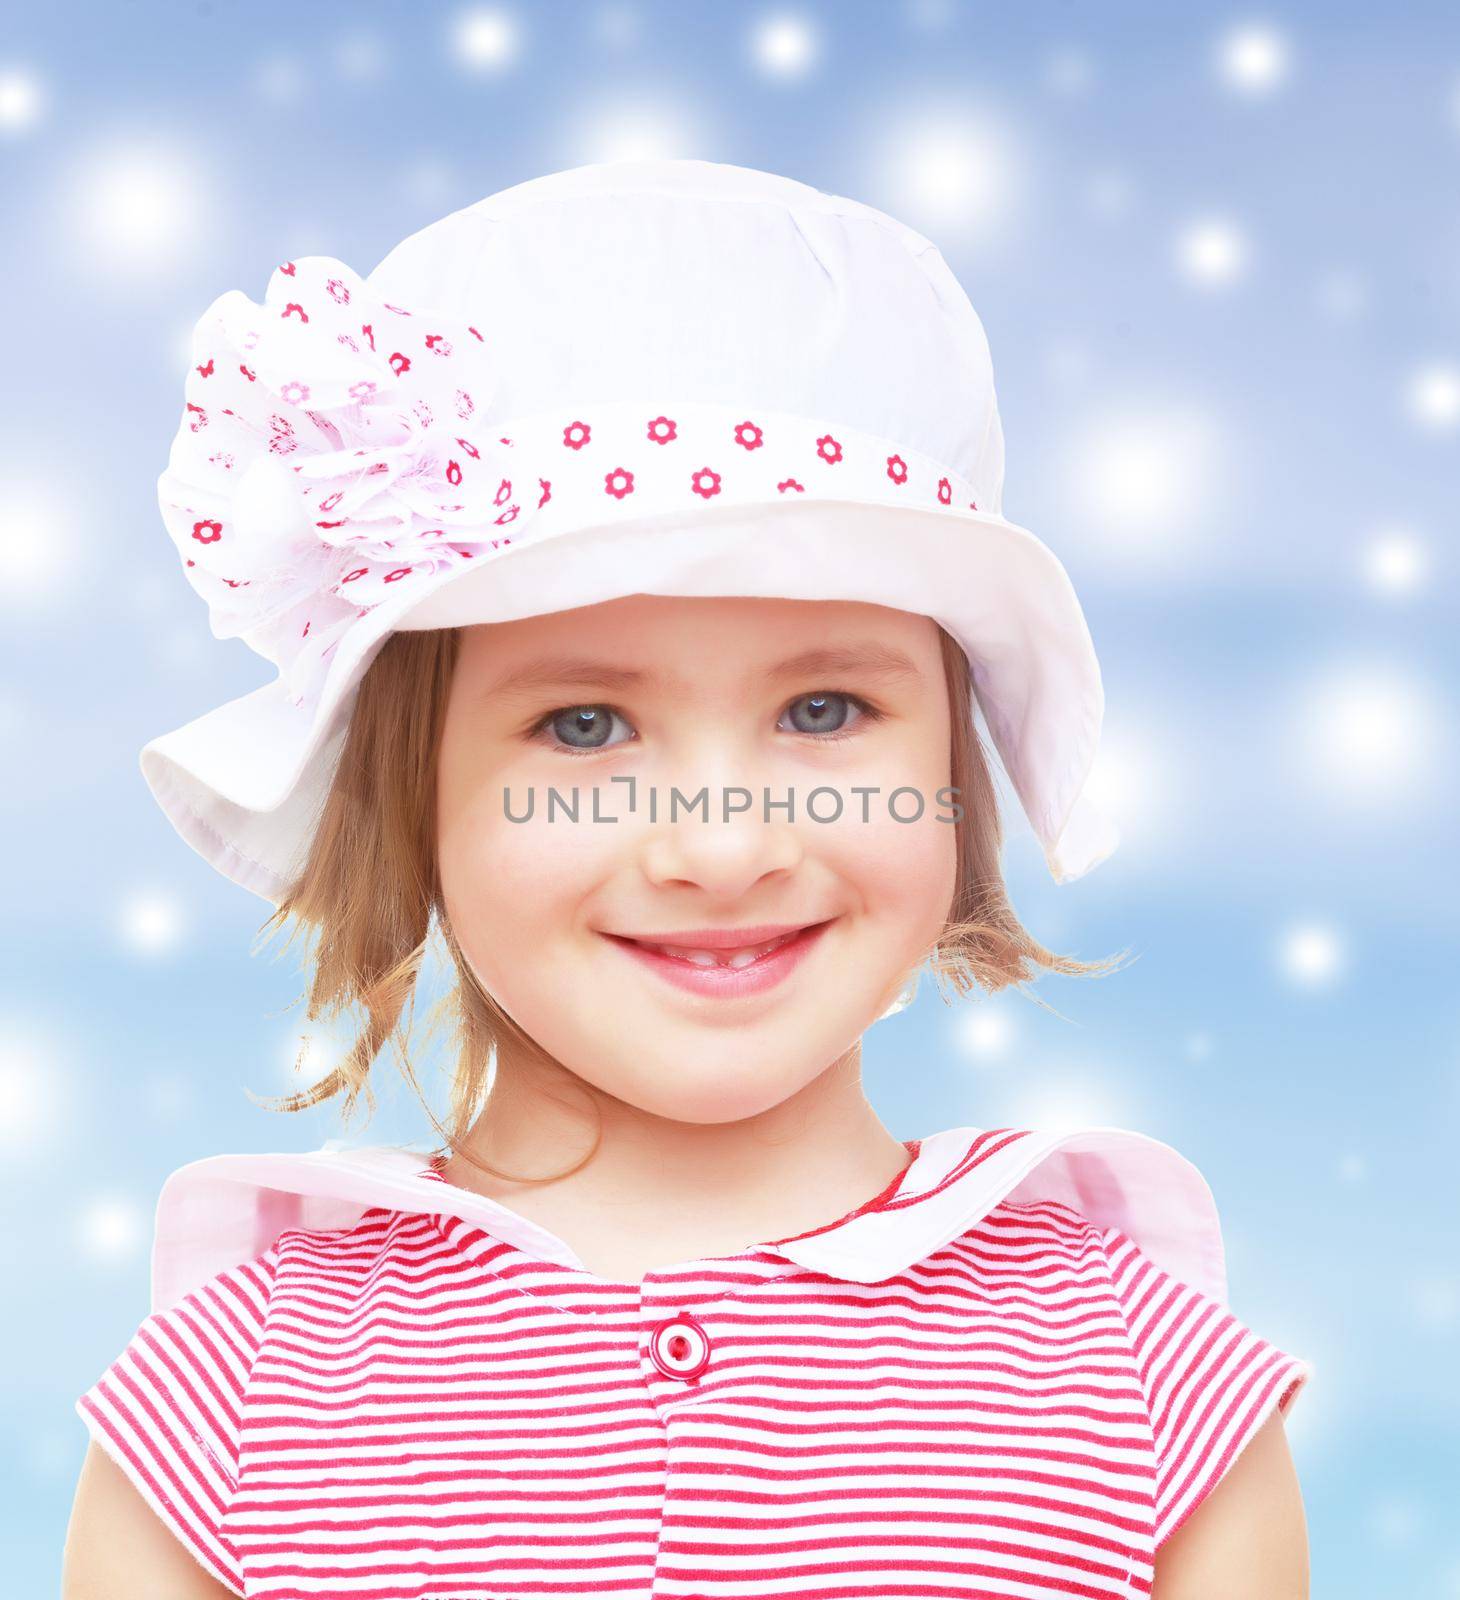 The little girl in the hat by kolesnikov_studio